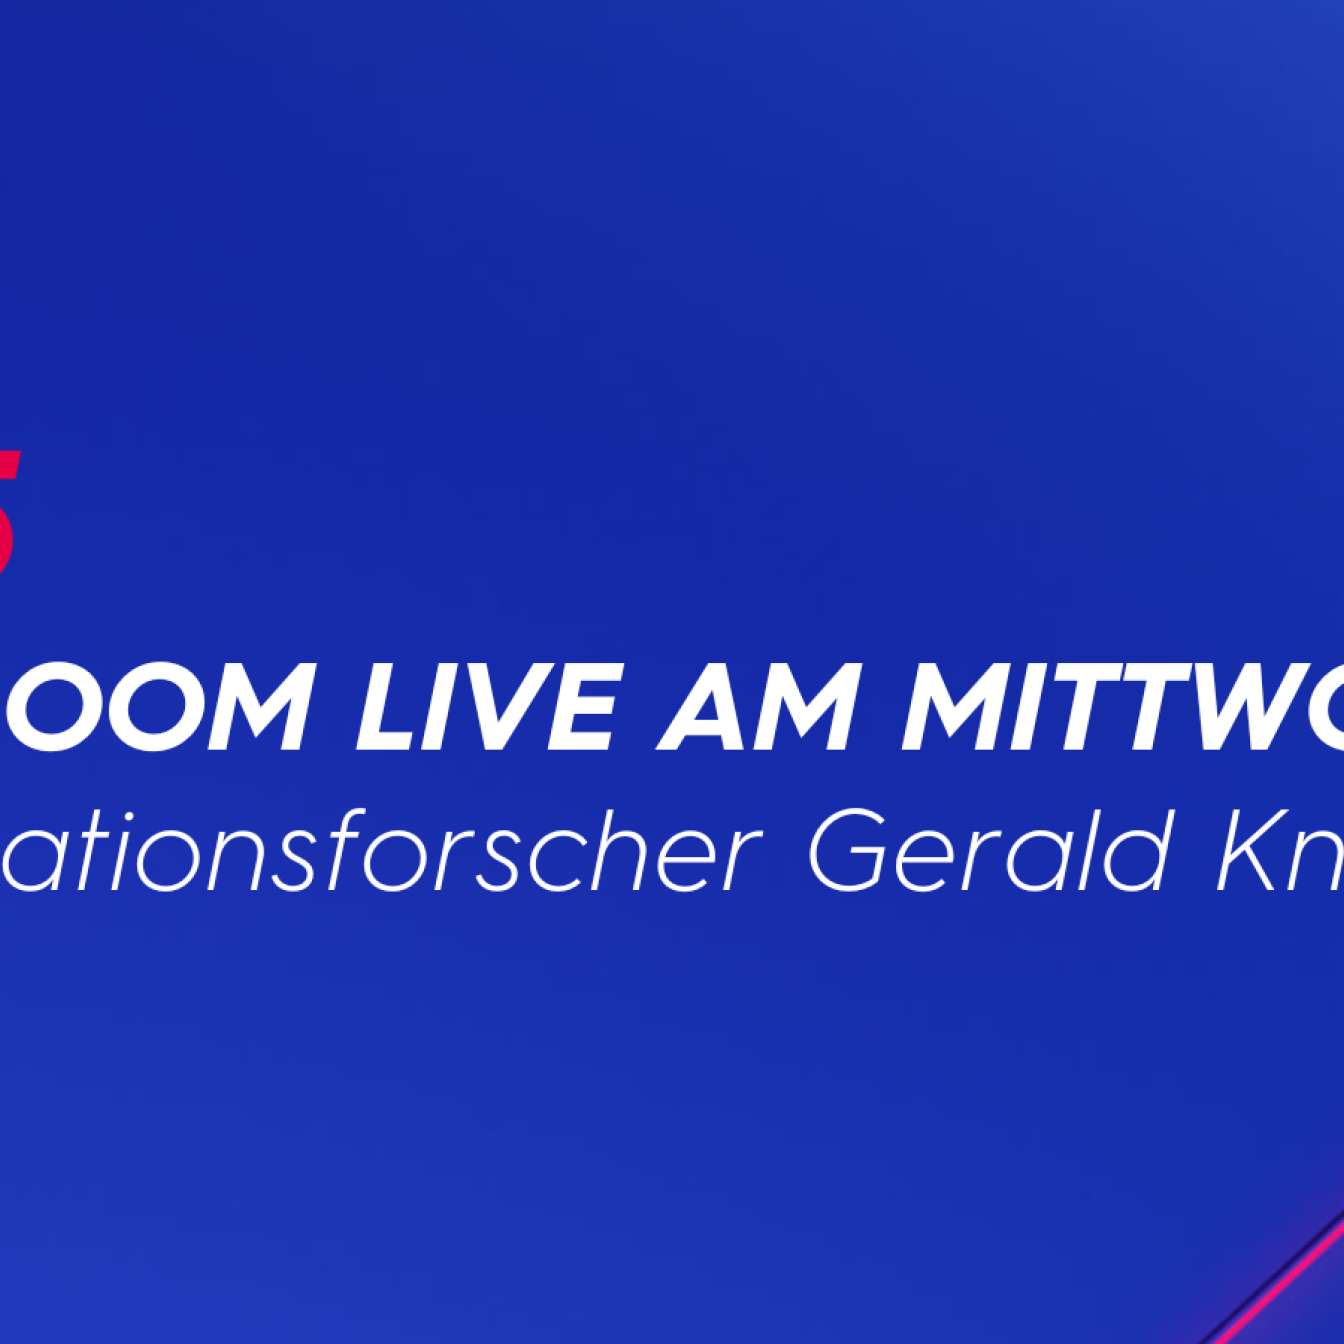 Newsroom Live am Mittwoch mit Migrationsforscher Gerald Knaus